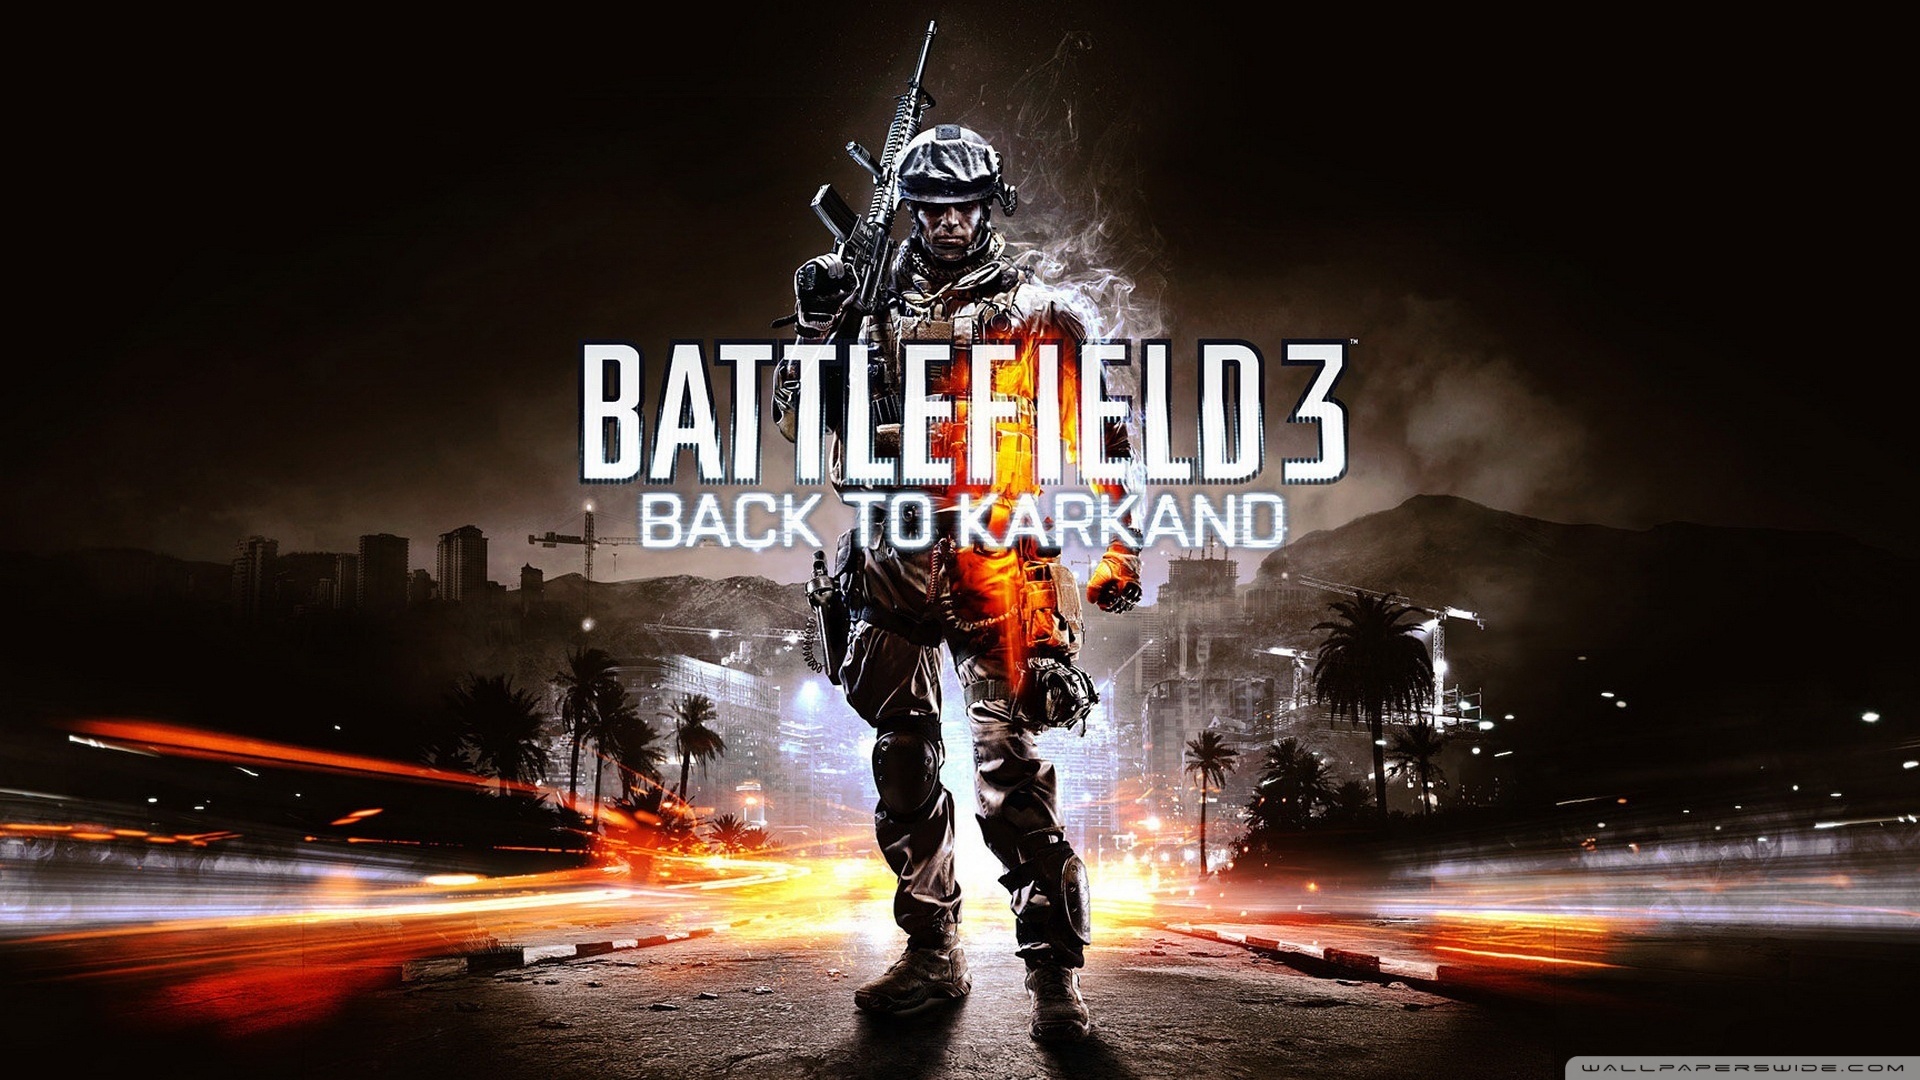 Battlefield 3 Back To Karkand Wallpaper - Battlefield 3 Back To Karkand - HD Wallpaper 